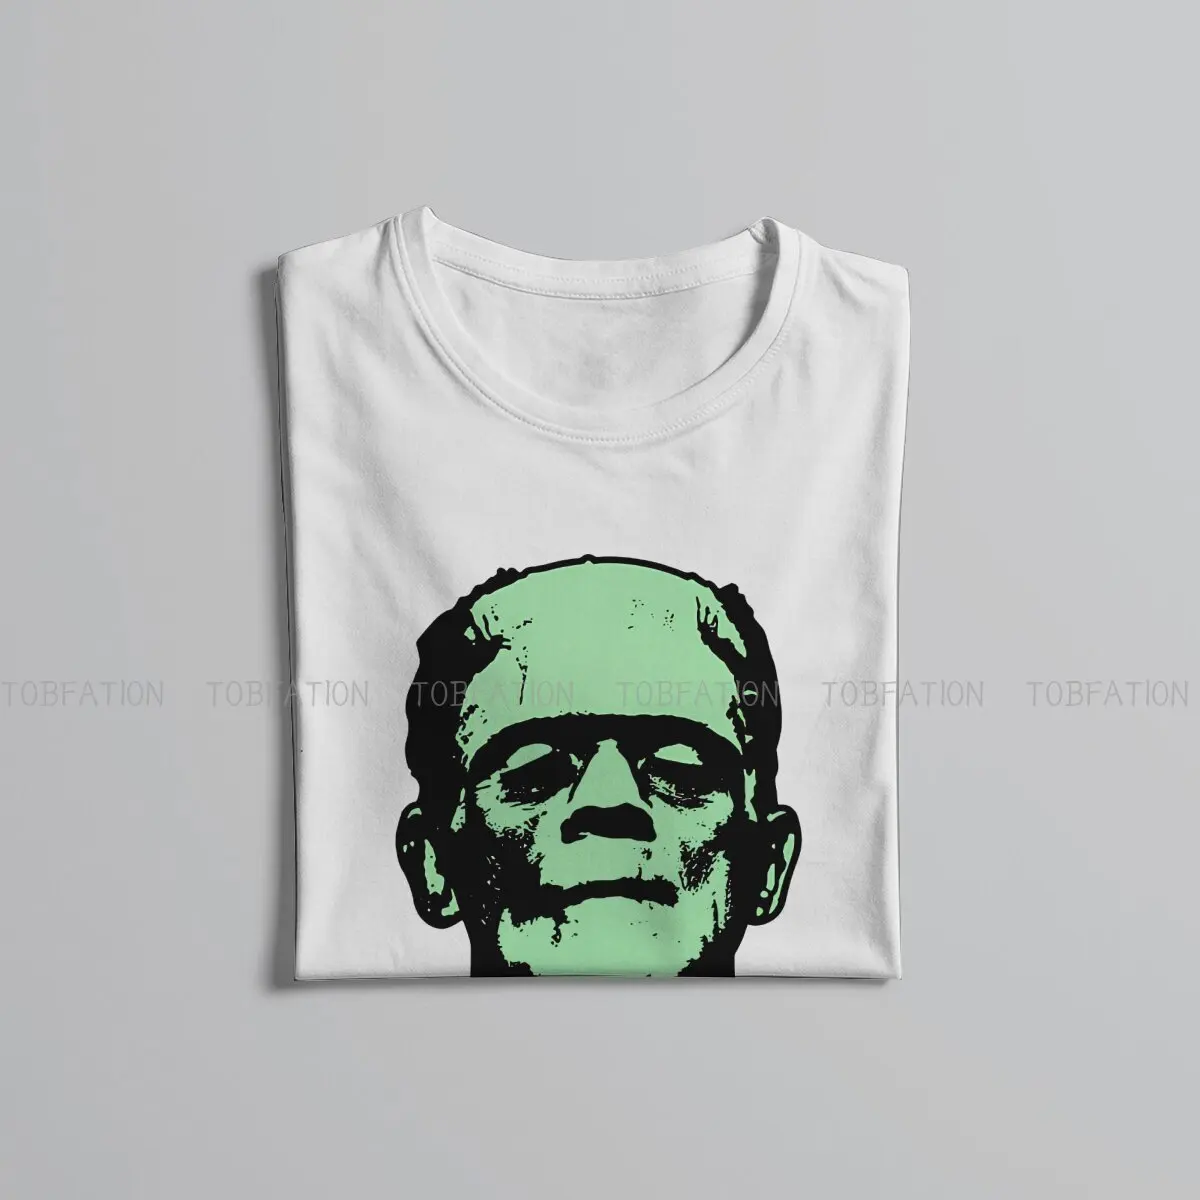 Frankenstein TShirt për Burrat Humor Humor të Lirë Sweatshirts T Shirt me Cilësi të Lartë Dizajn të Ri të Lirshme . ' - ' . 4